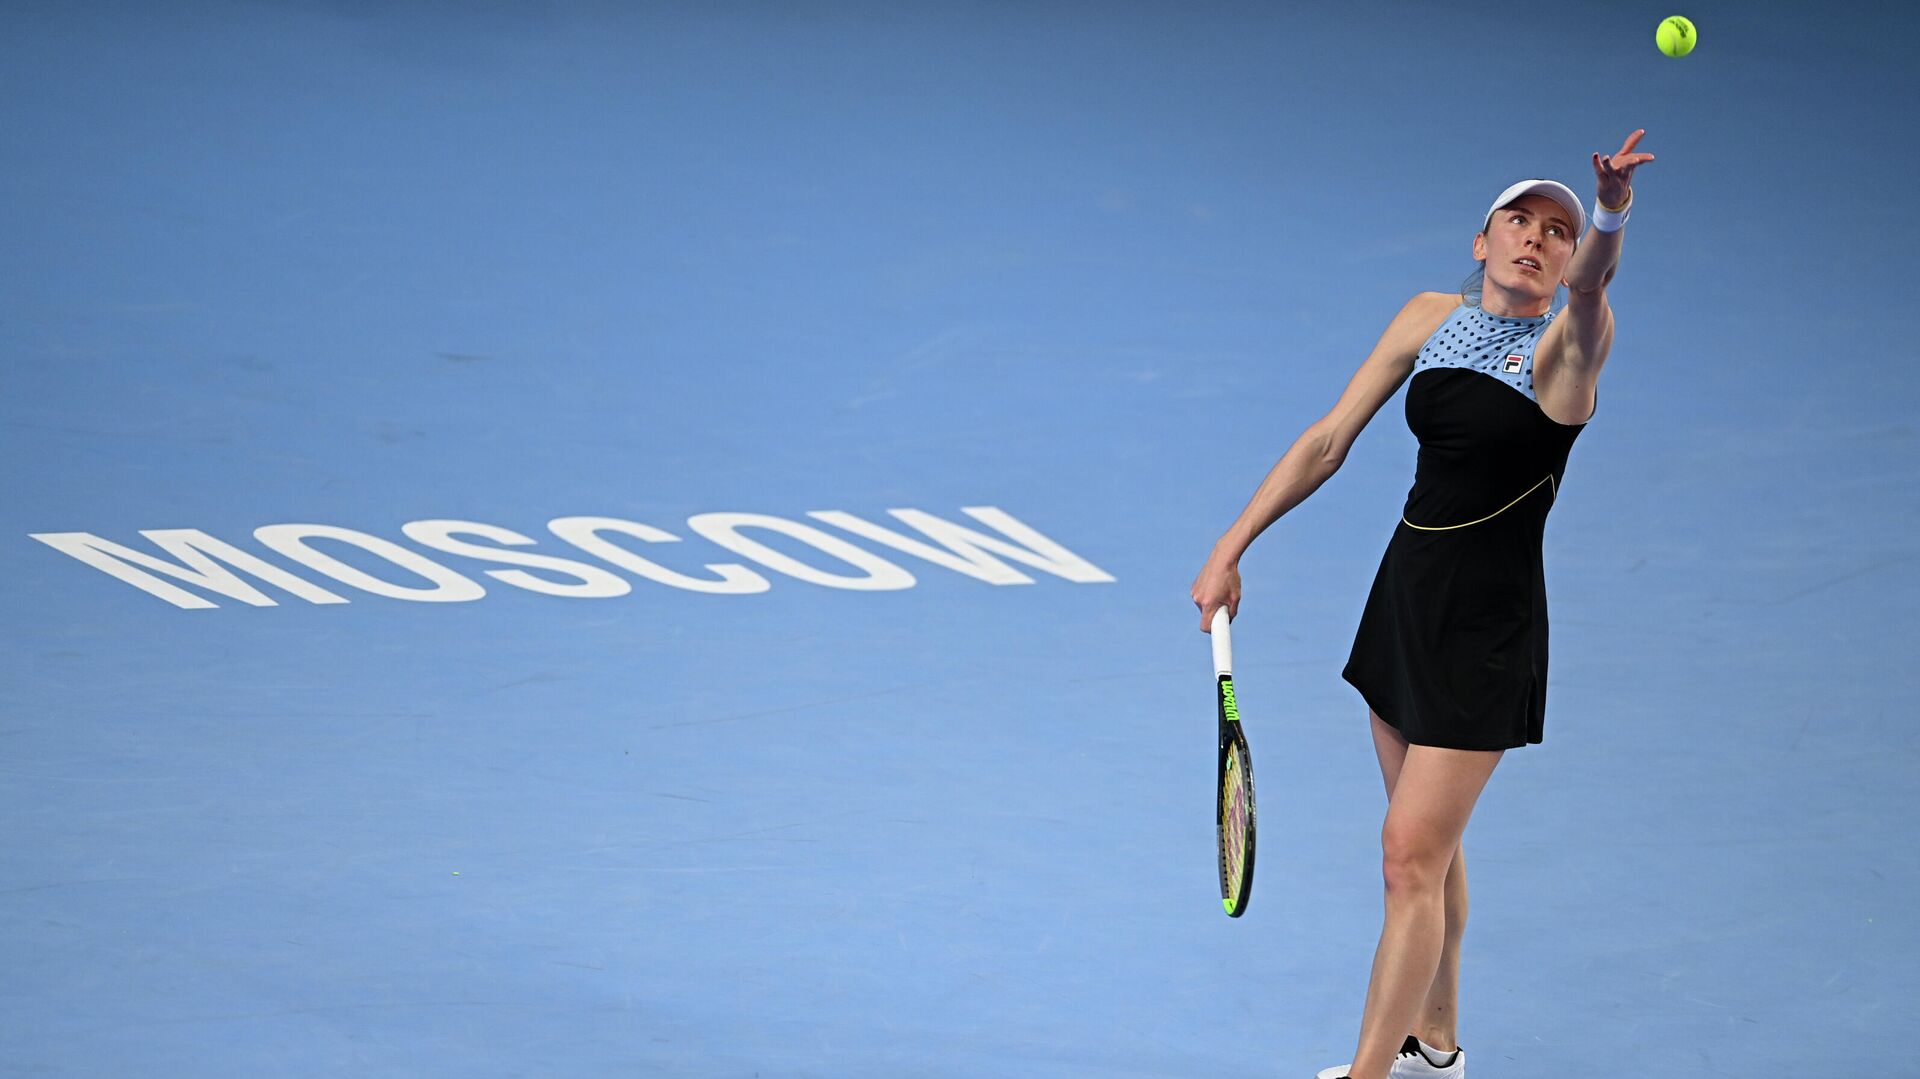 Российская теннисистка Александрова поднялась на 14 позиций в рейтинге WTA